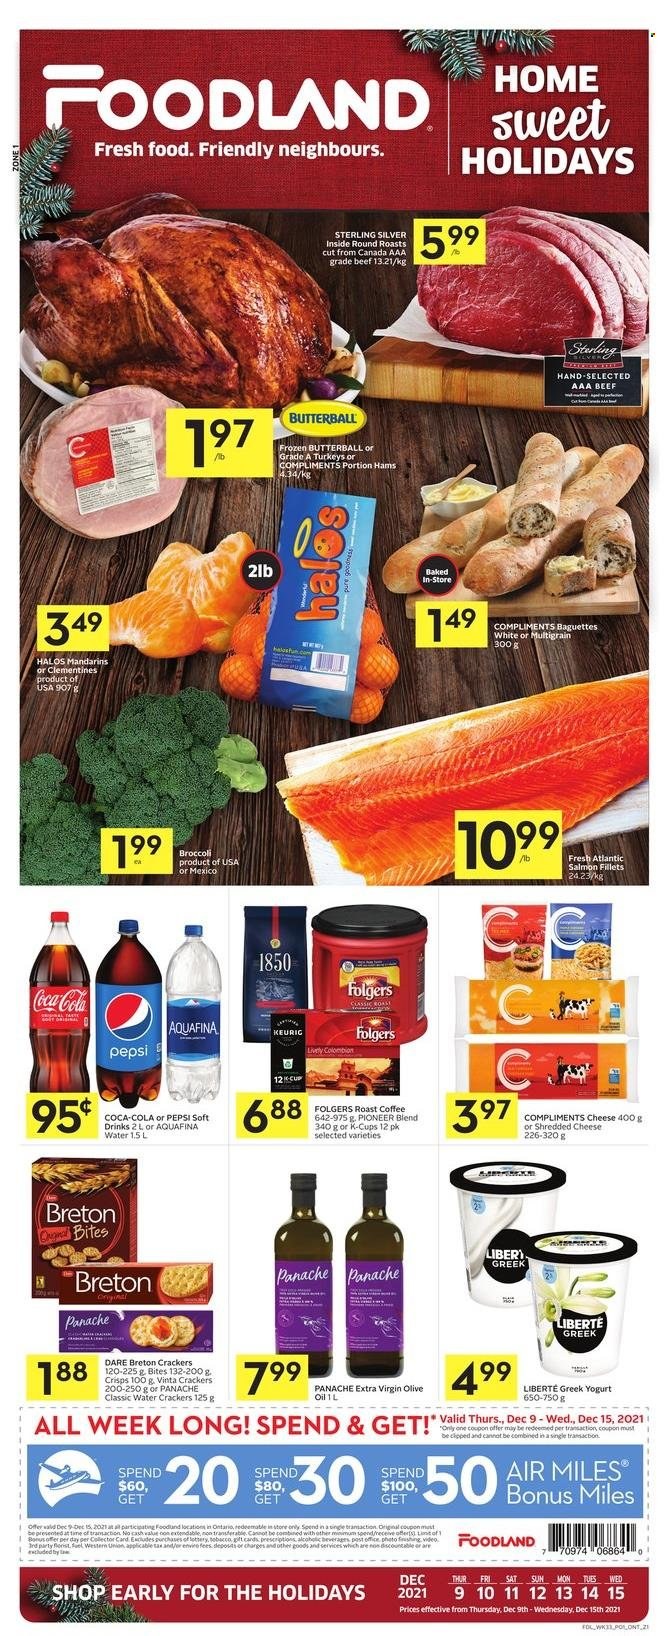 thumbnail - Circulaire Foodland - 09 Décembre 2021 - 15 Décembre 2021 - Produits soldés - clémentines, crackers, Coca-Cola, Pepsi, baguette, Pioneer. Page 1.